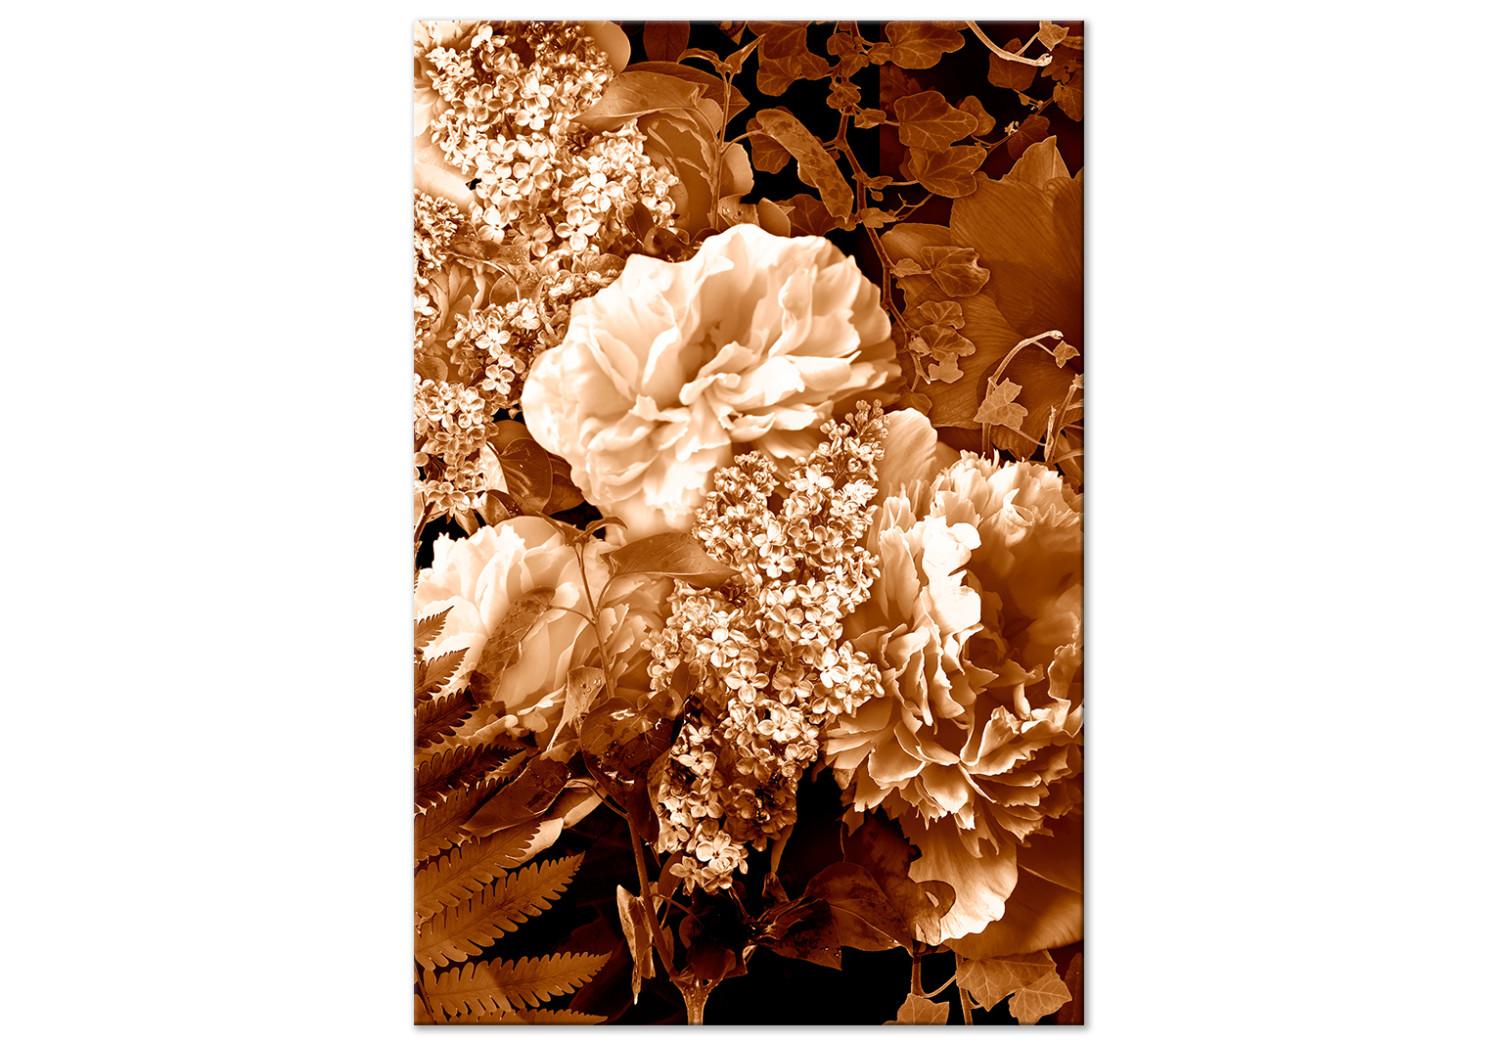 Cuadro moderno Ramo de flores de otoño - una foto de flores en color sepia